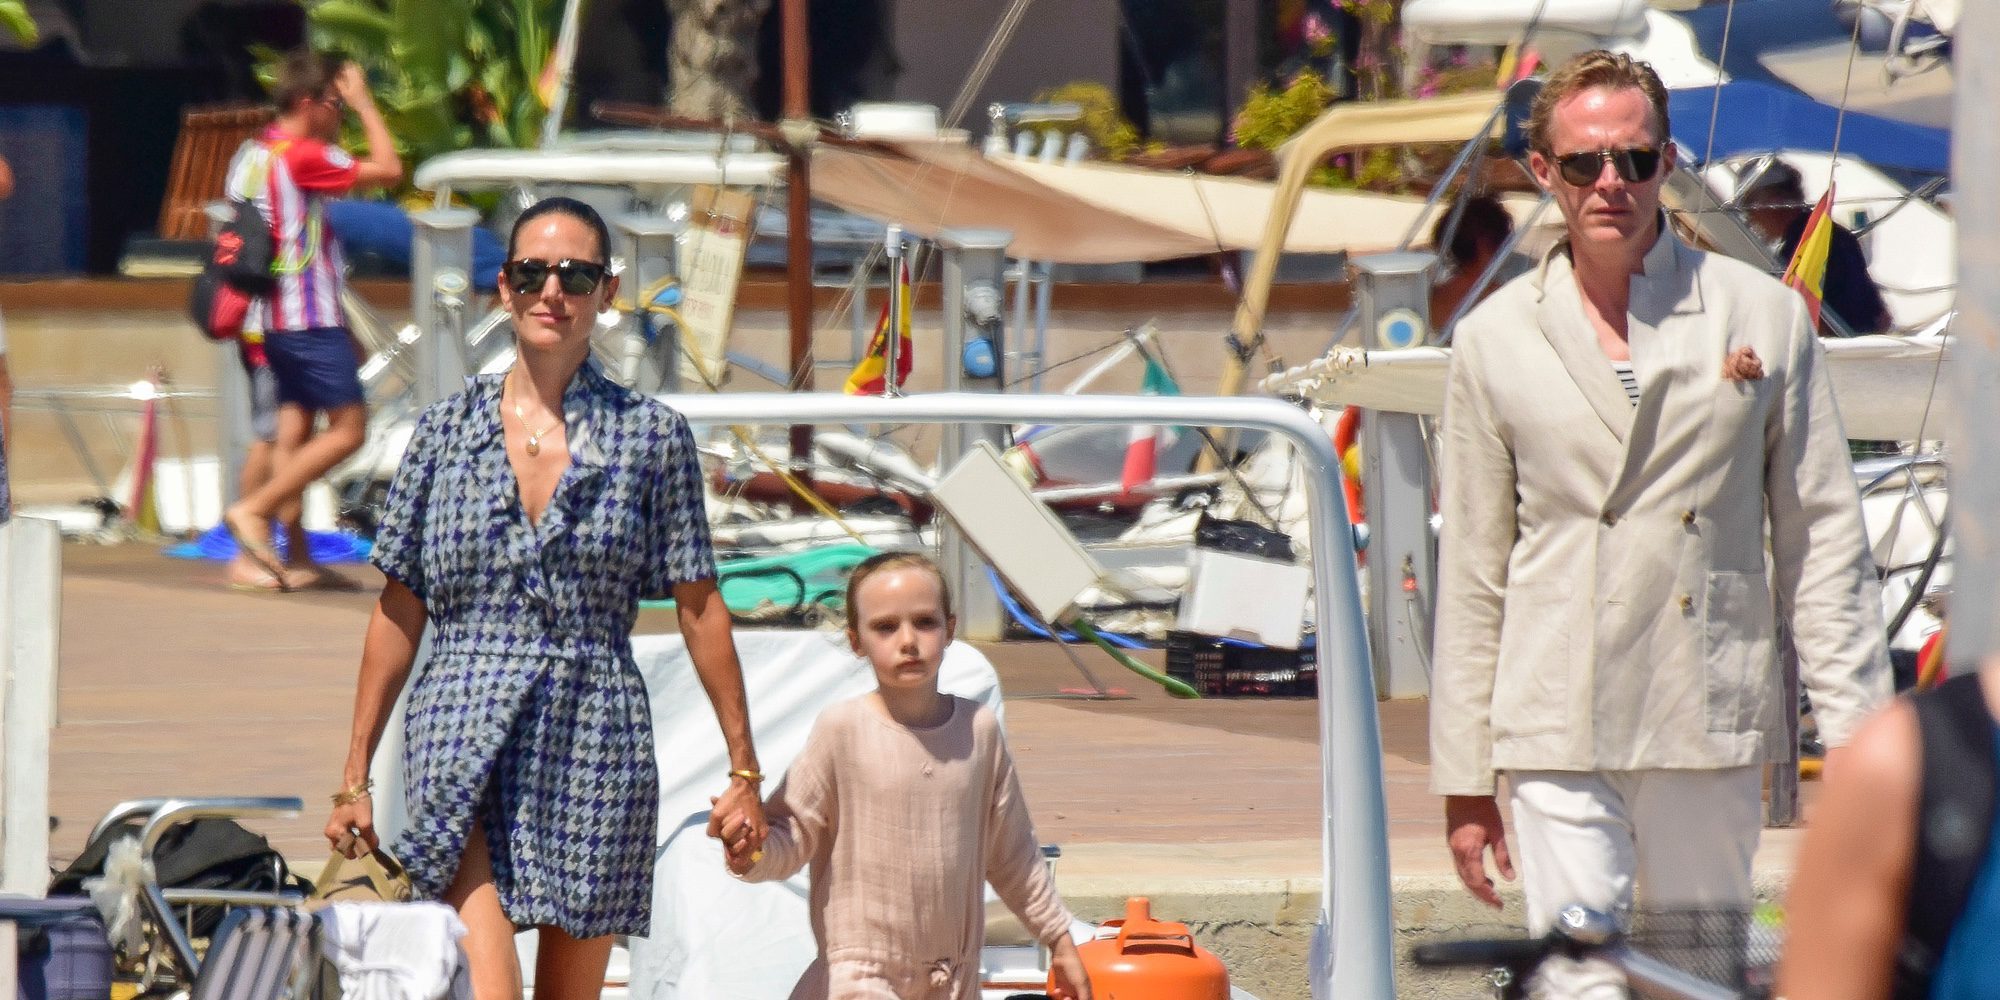 Las felices vacaciones de Jennifer Connelly y Paul Bettany con su familia en Formentera